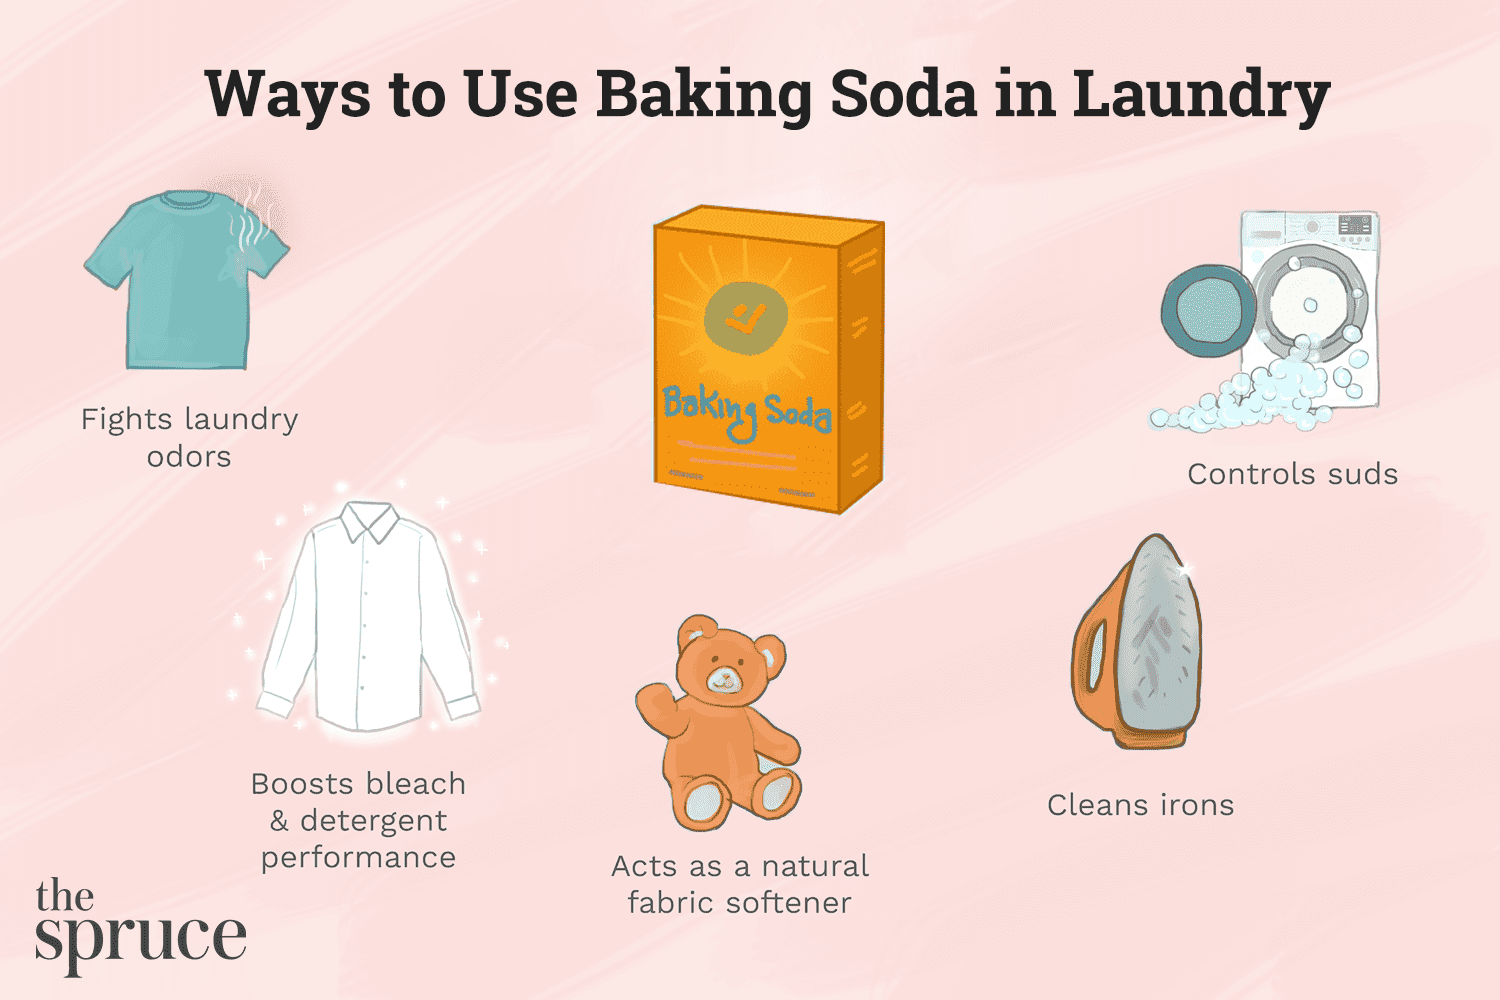 Comment utiliser le bicarbonate de soude dans la lessive